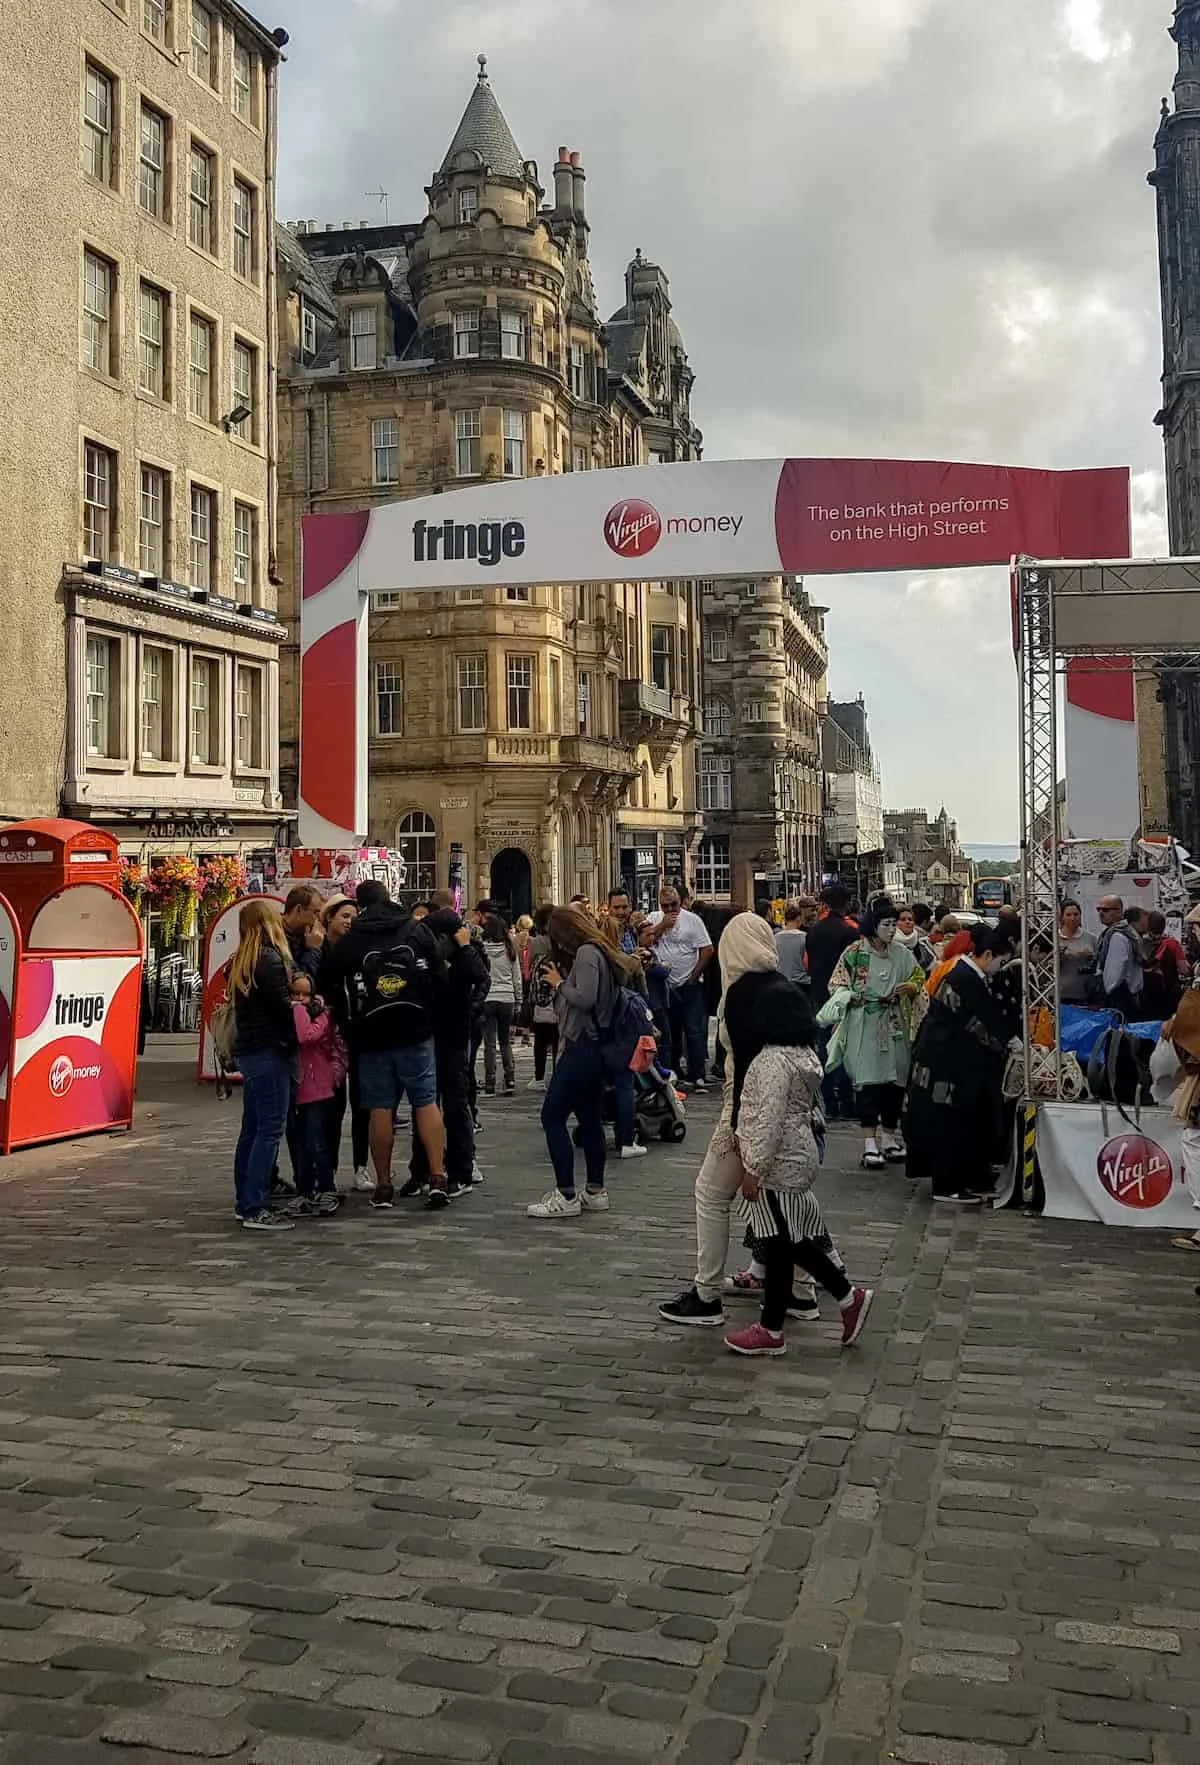 Streets of Edinburgh during fringe festival